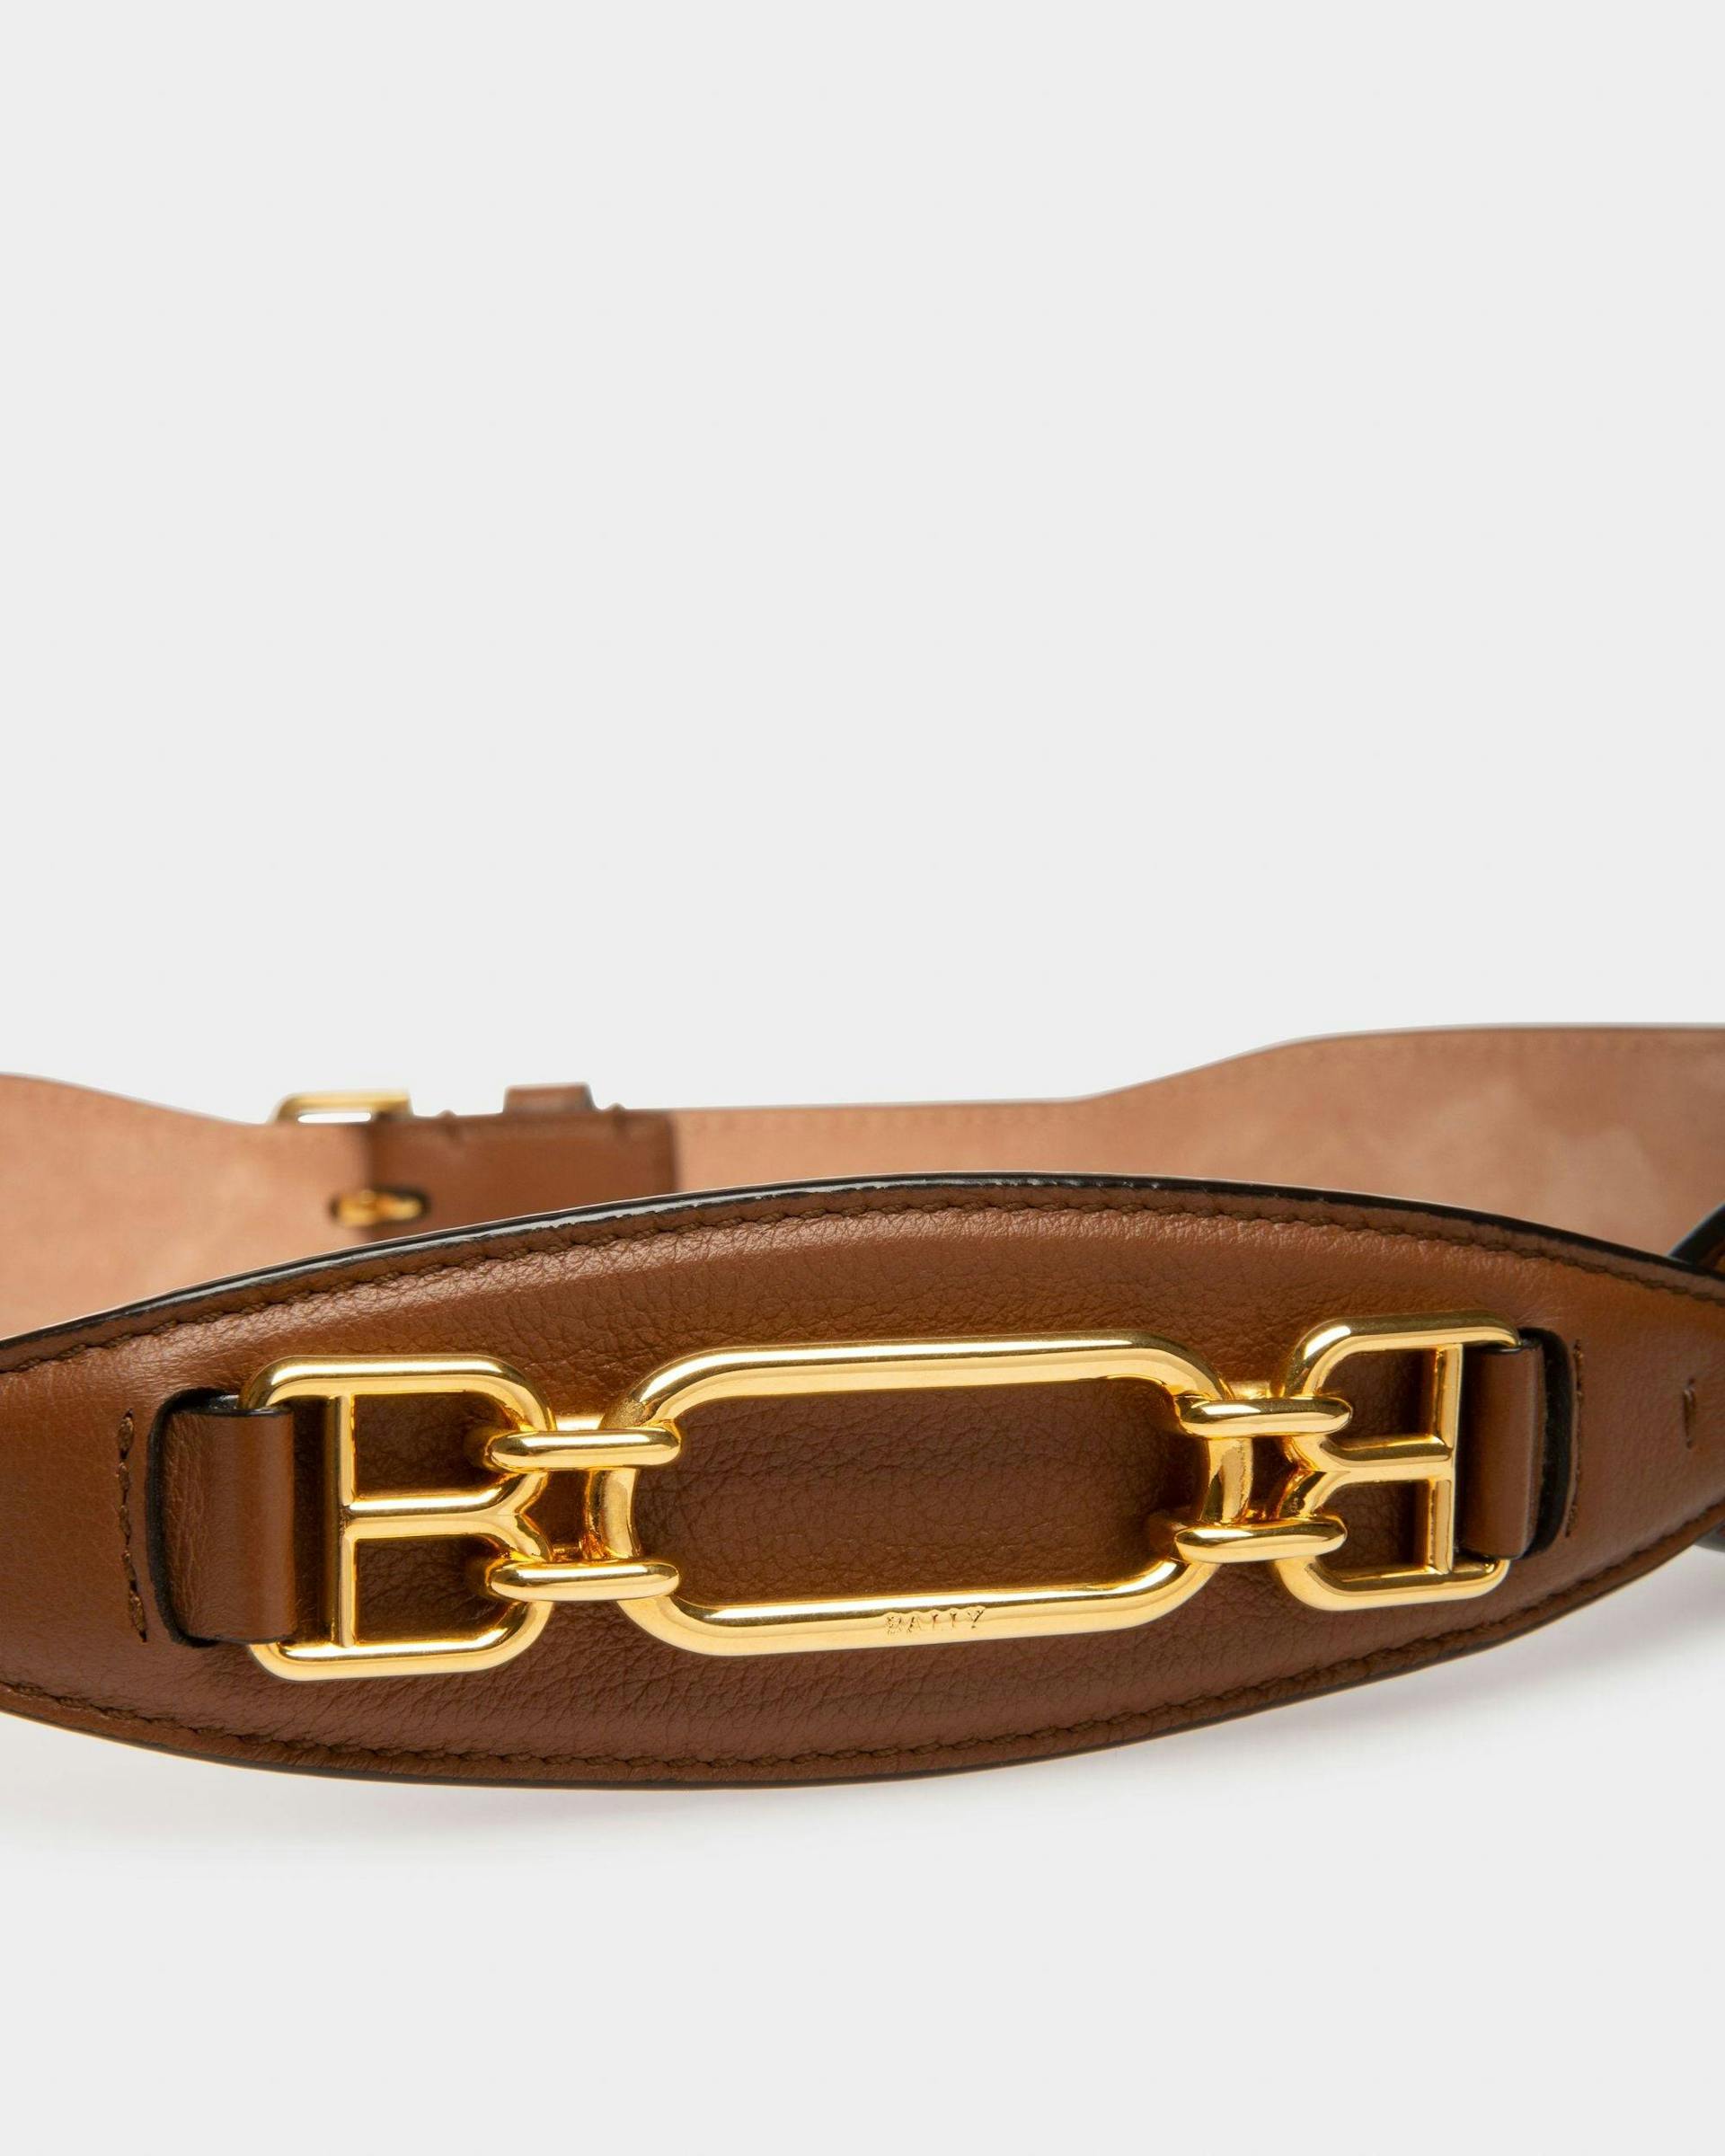 VESTIGE Leather 42Mm Belt In Brown - Women's - Bally - 03